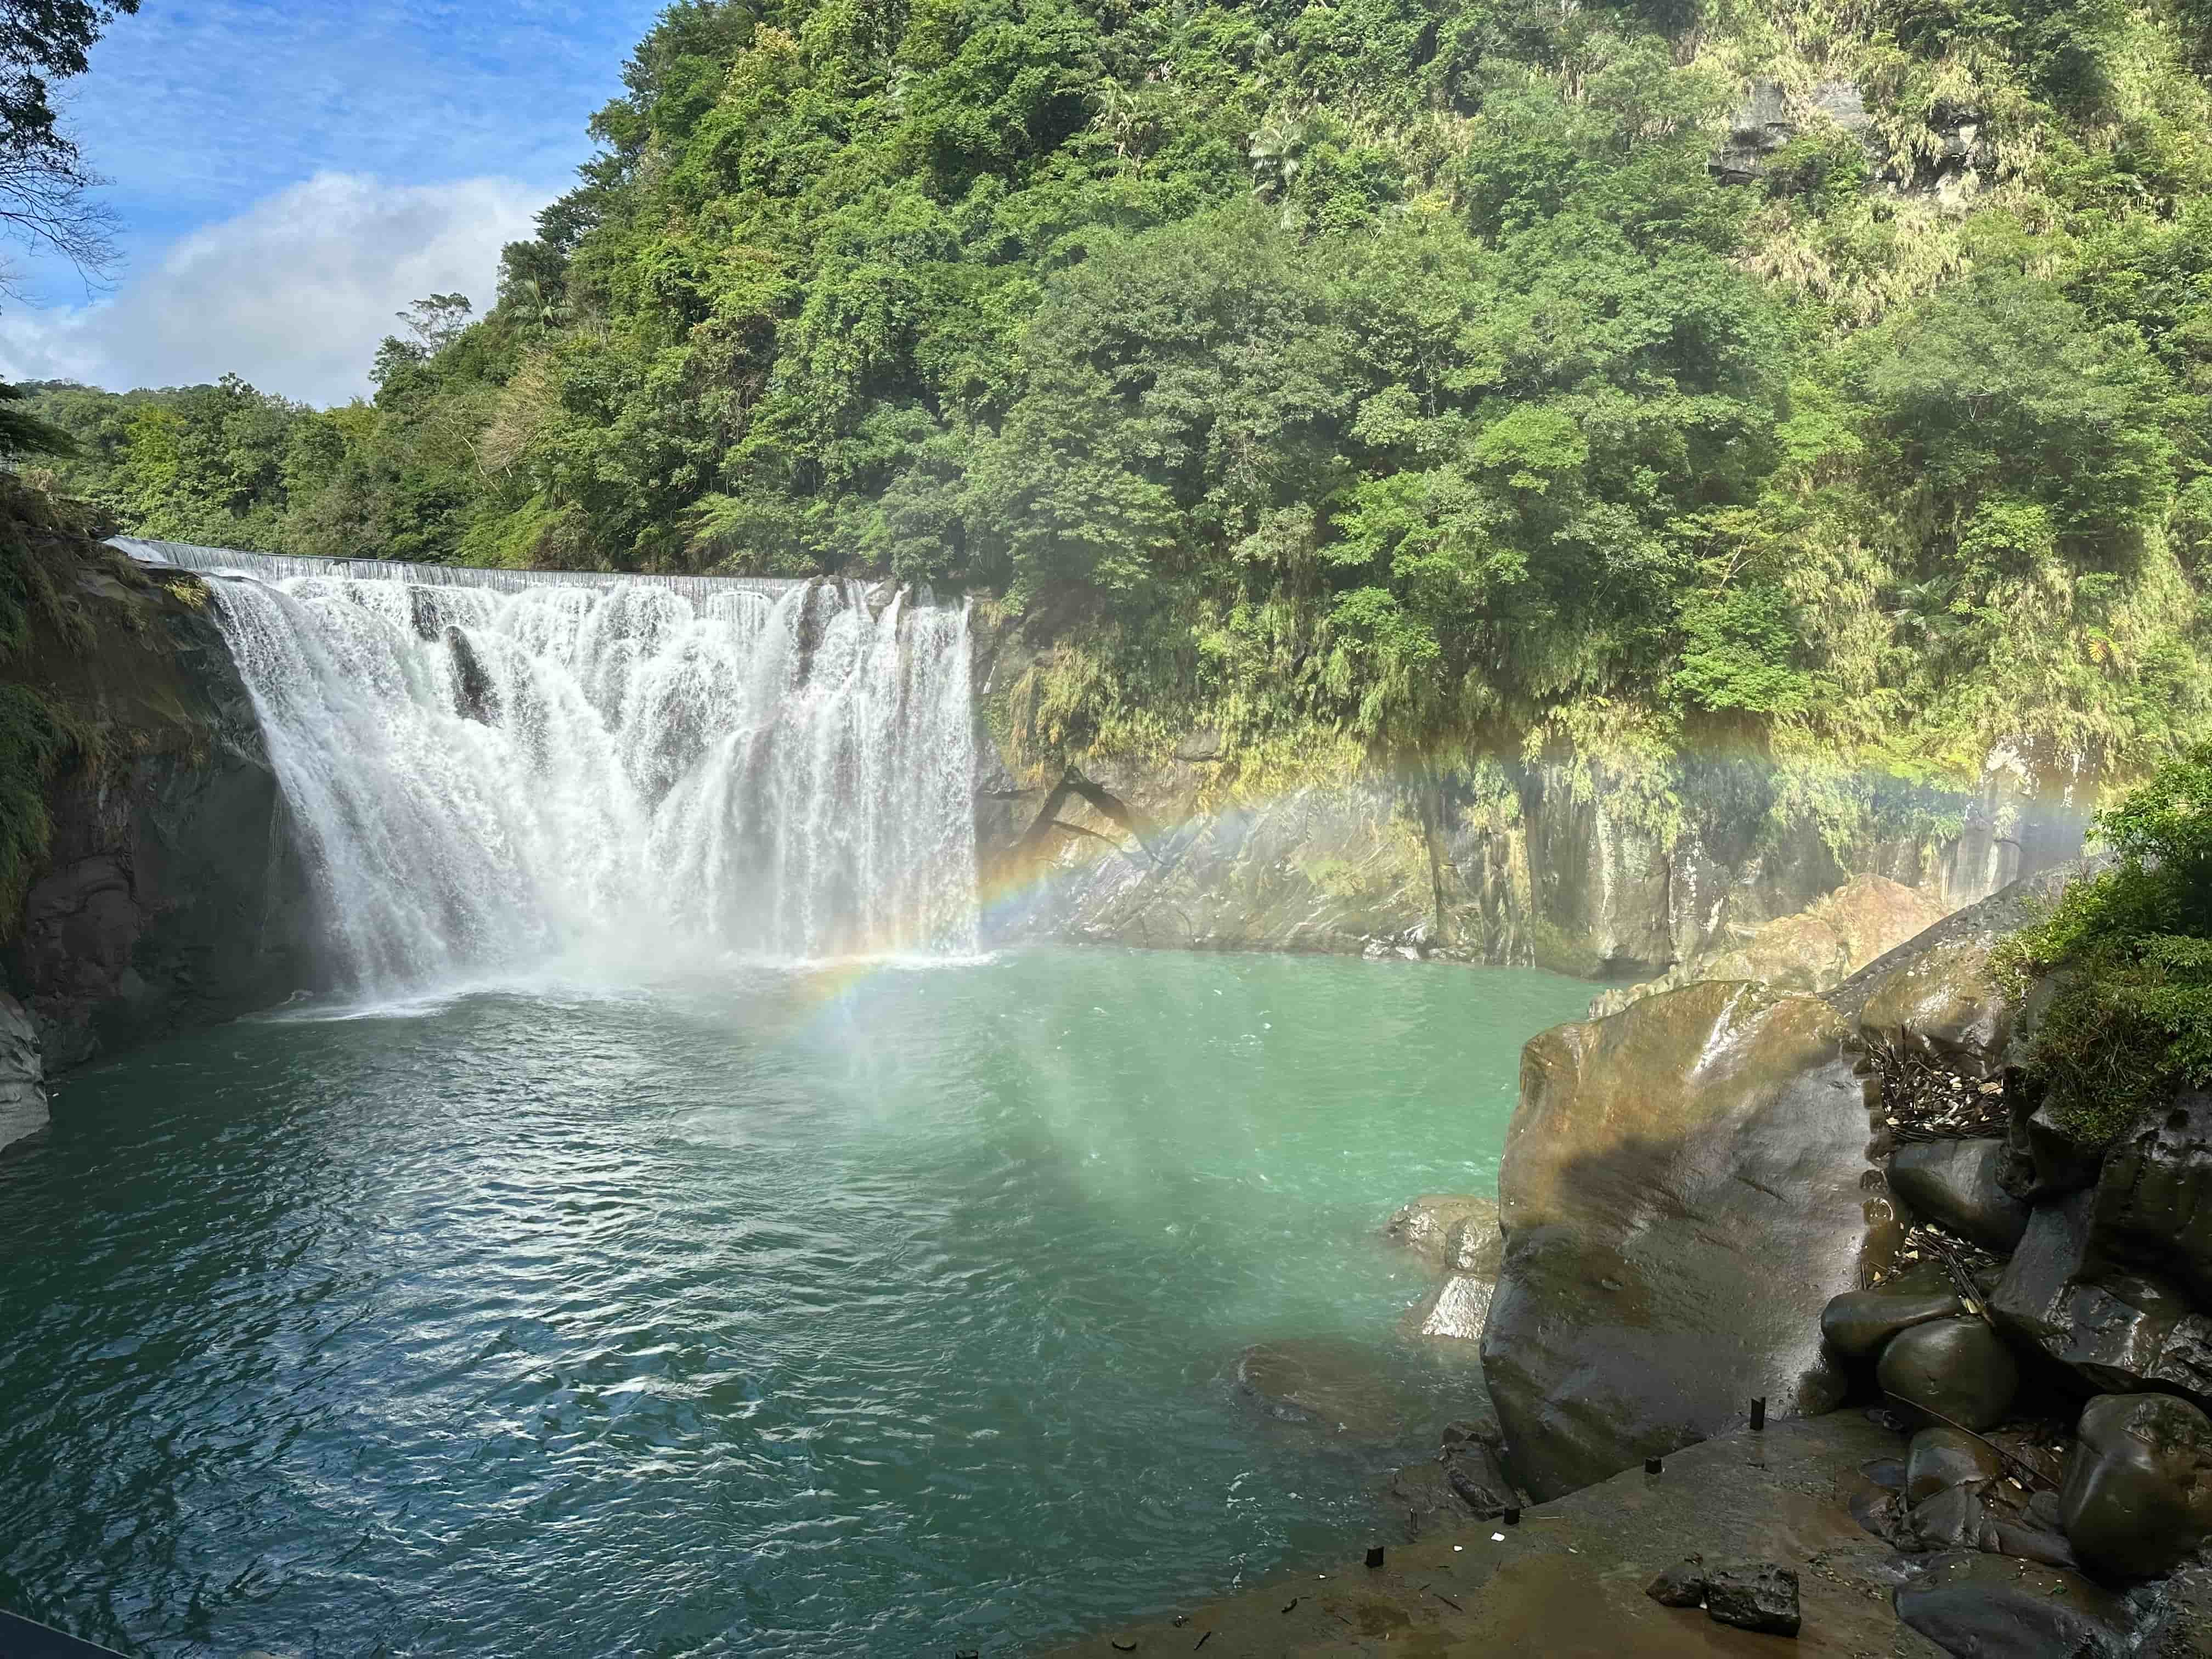 有「臺版尼加拉瀑布」之稱的十分瀑布深潭碧綠如墨，運氣好時還可看見彩虹斜掛